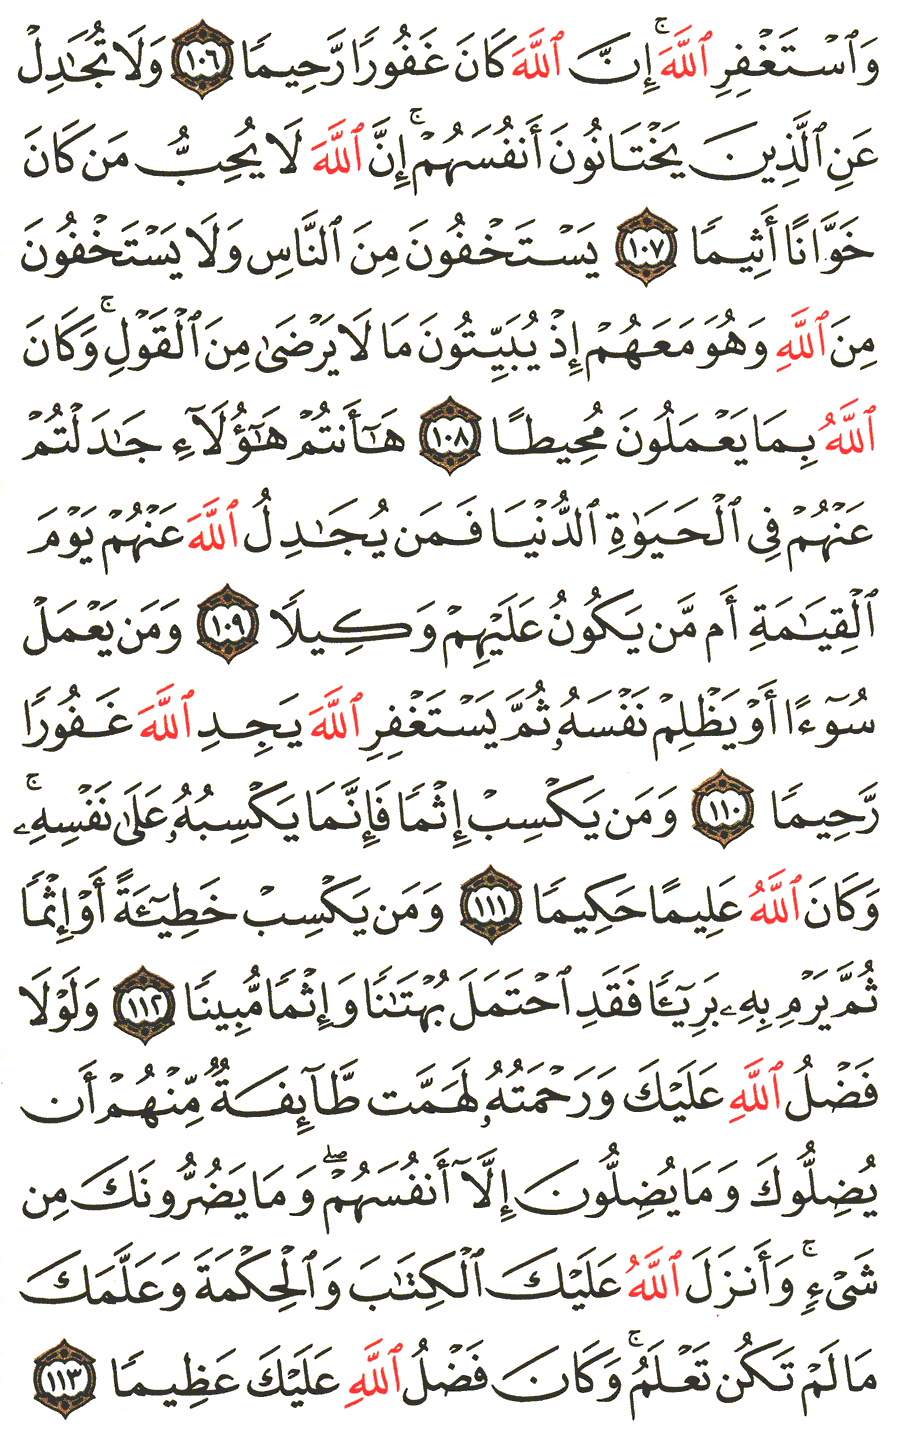 الصفحة 96 من القرآن الكريم